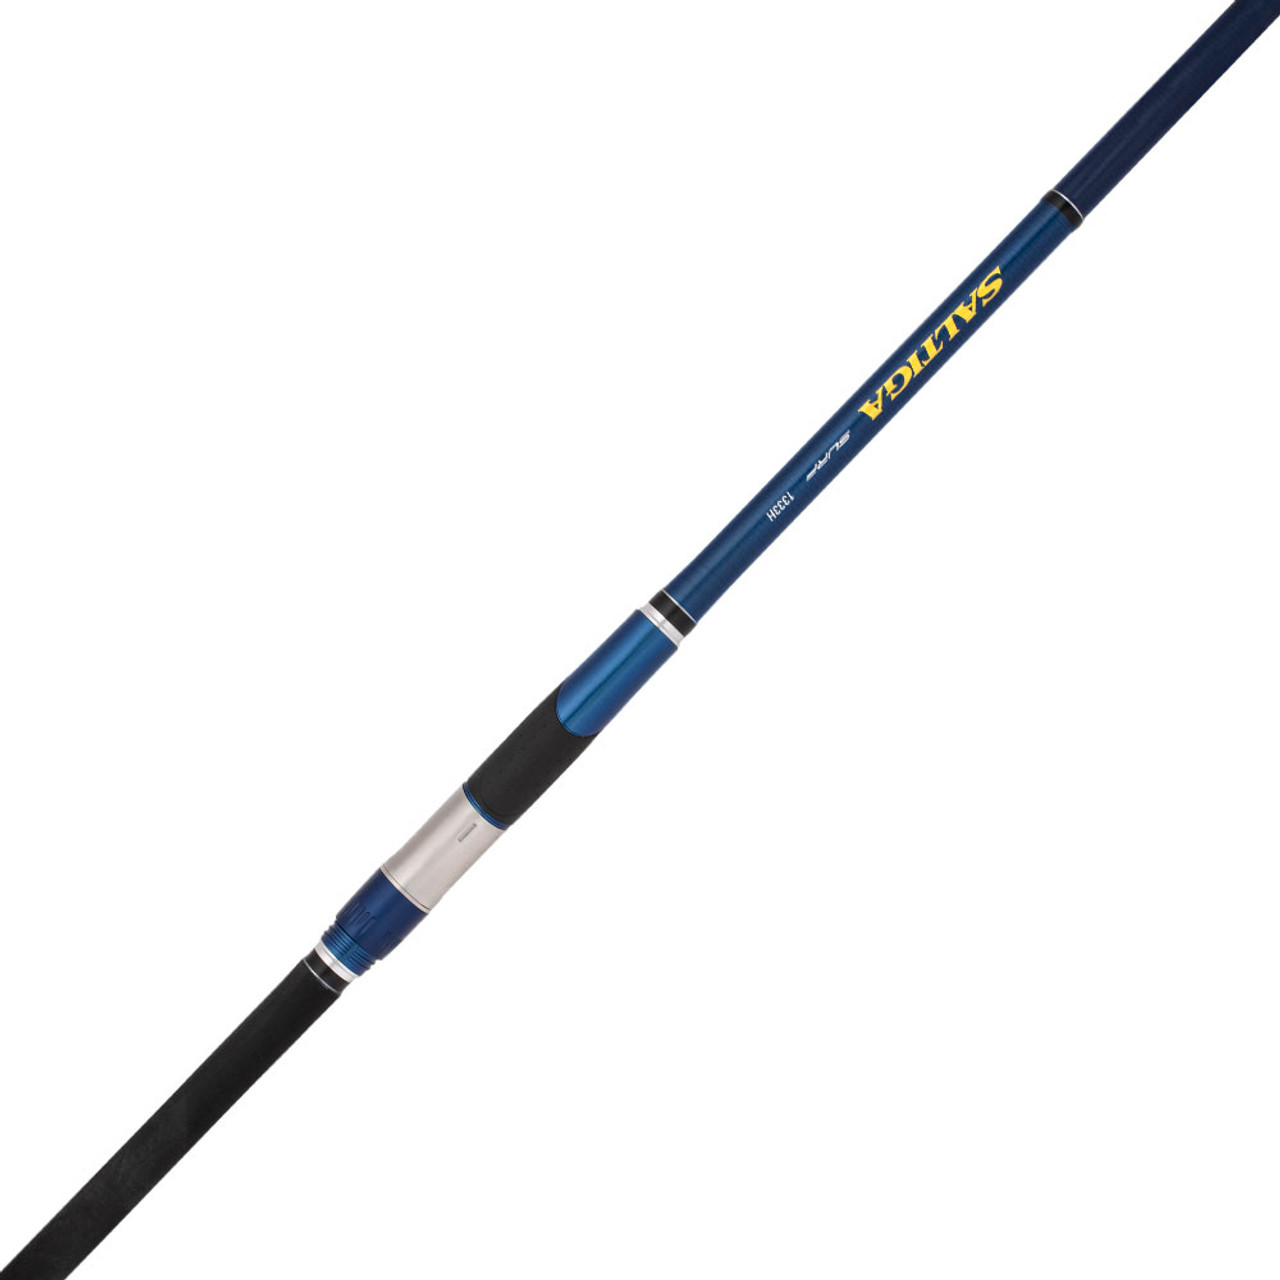 Daiwa Saltiga Surf Fishing Rod